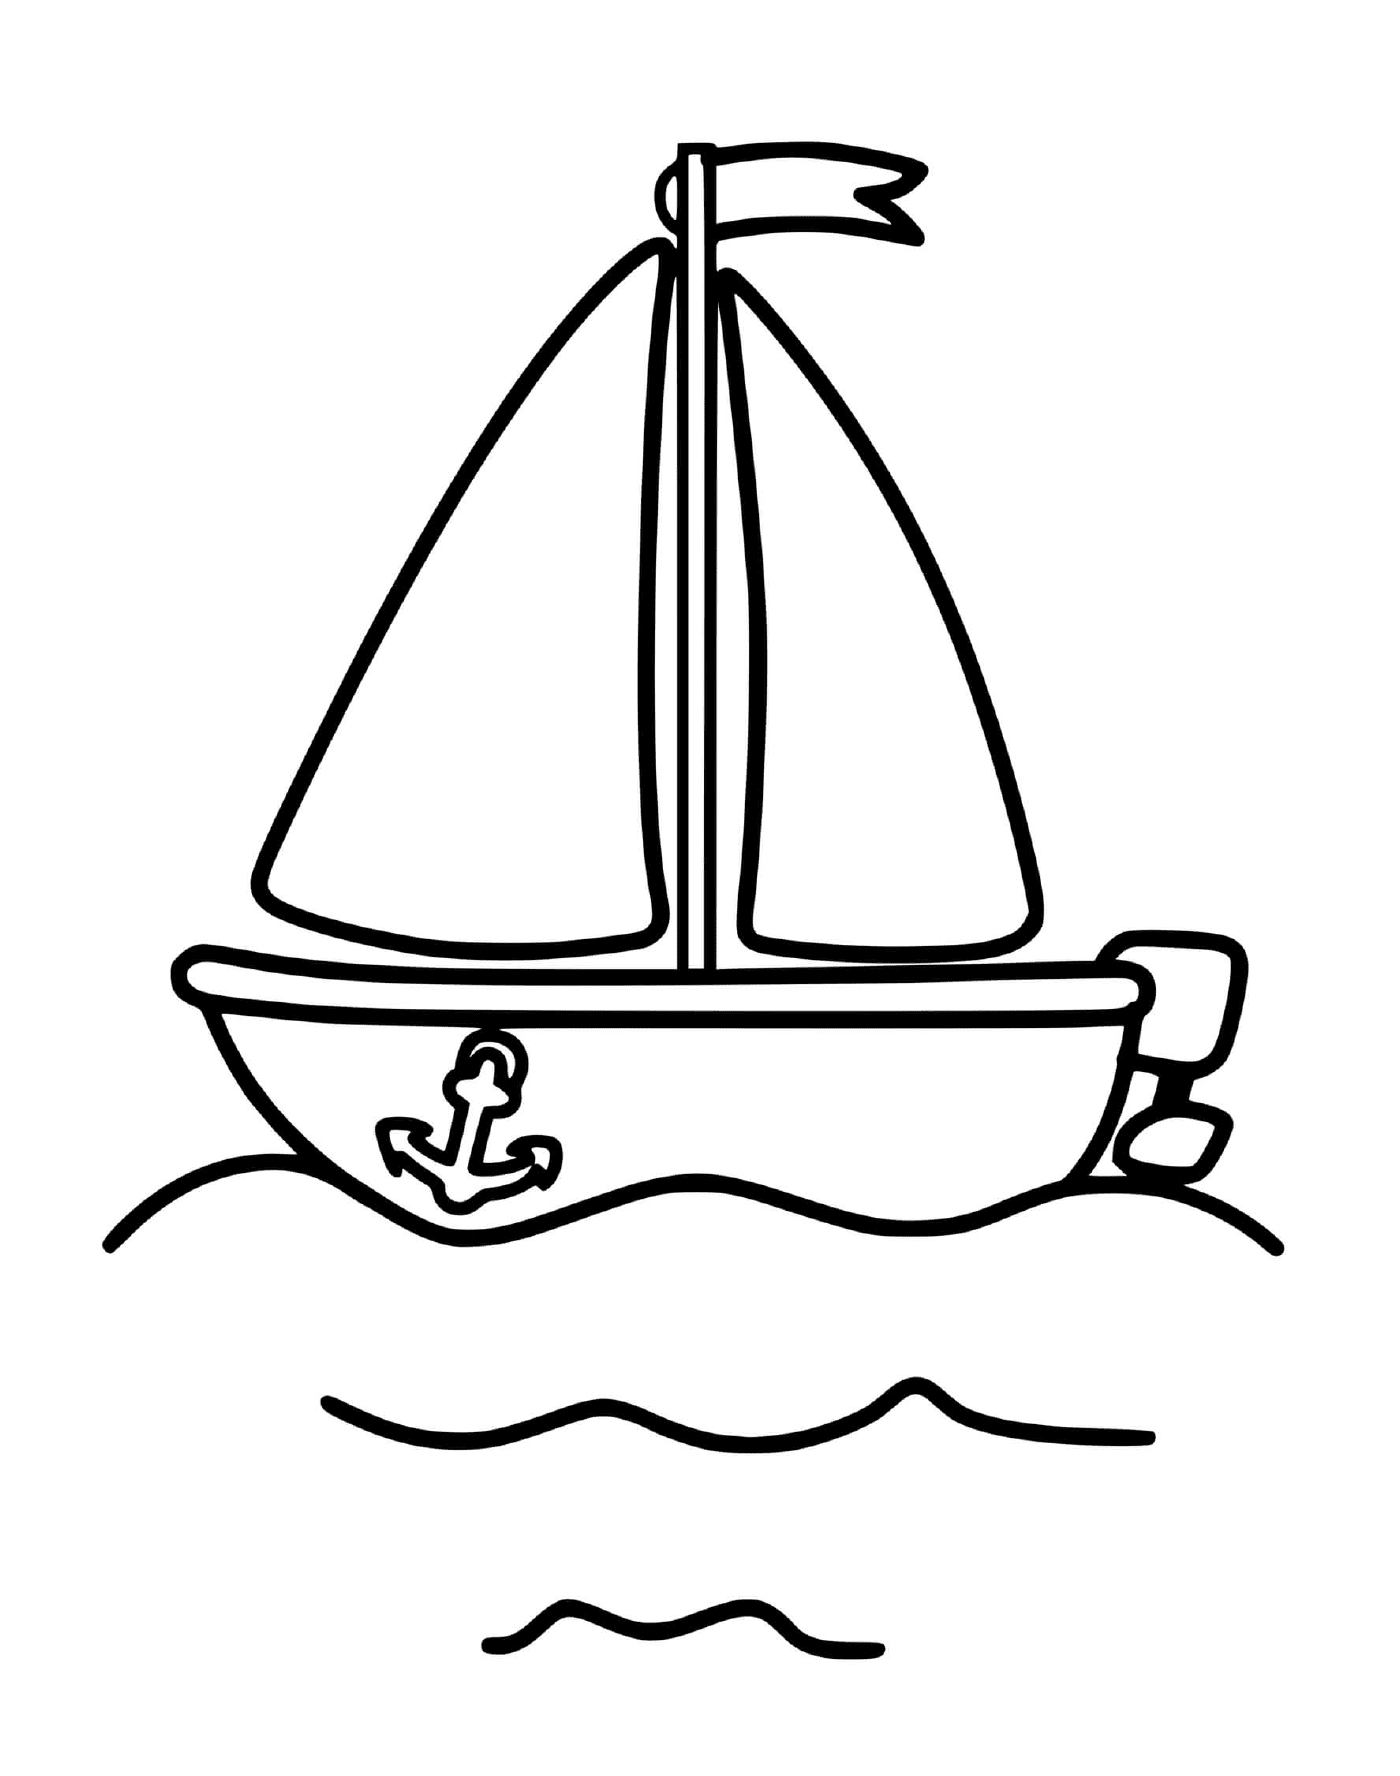  Um veleiro é mostrado em um desenho 